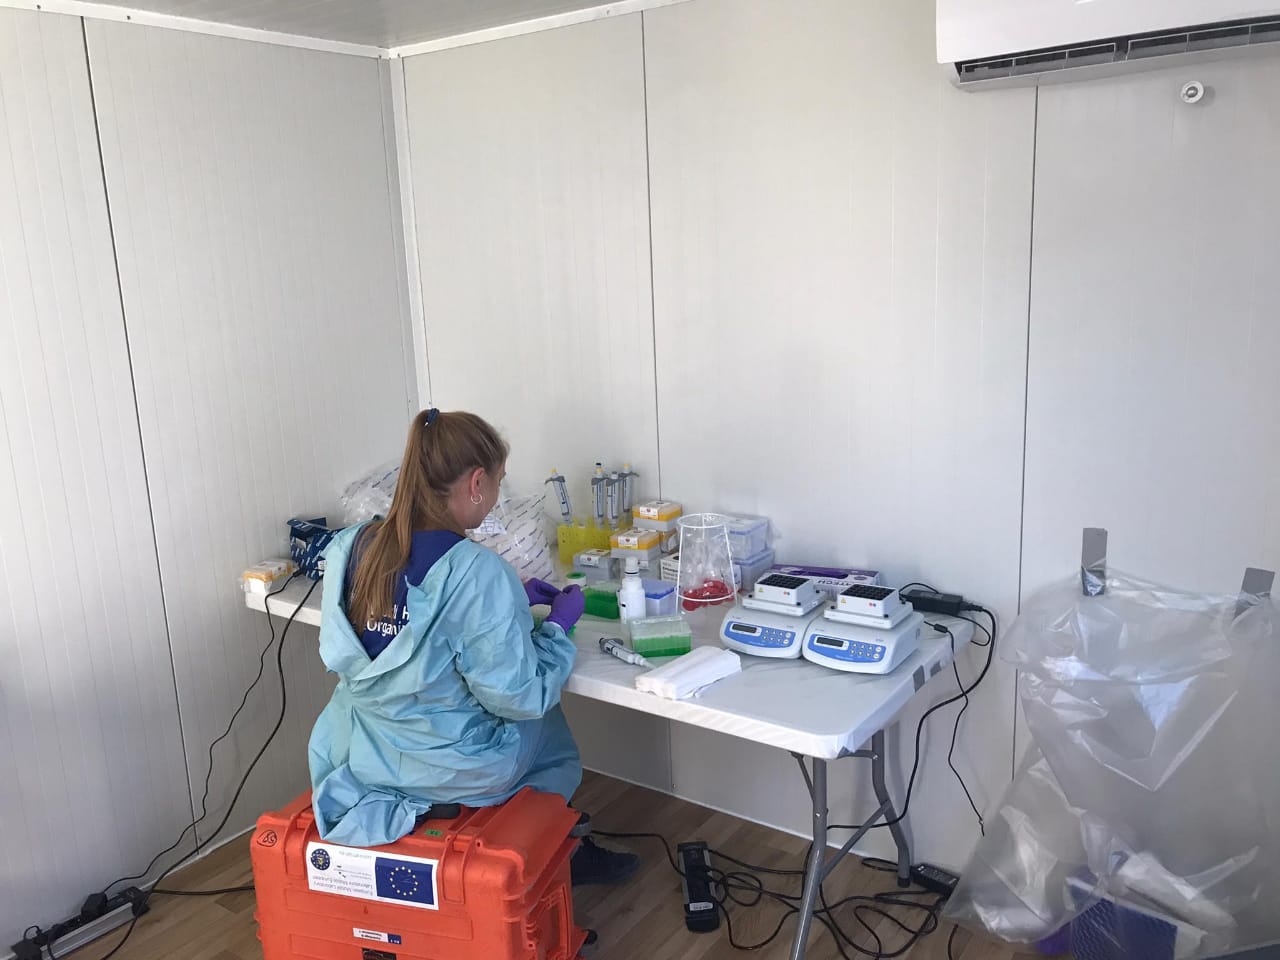 Das Bild zeigt eine Forscherin bei der Laborarbeit in einem Mobilen Labor.